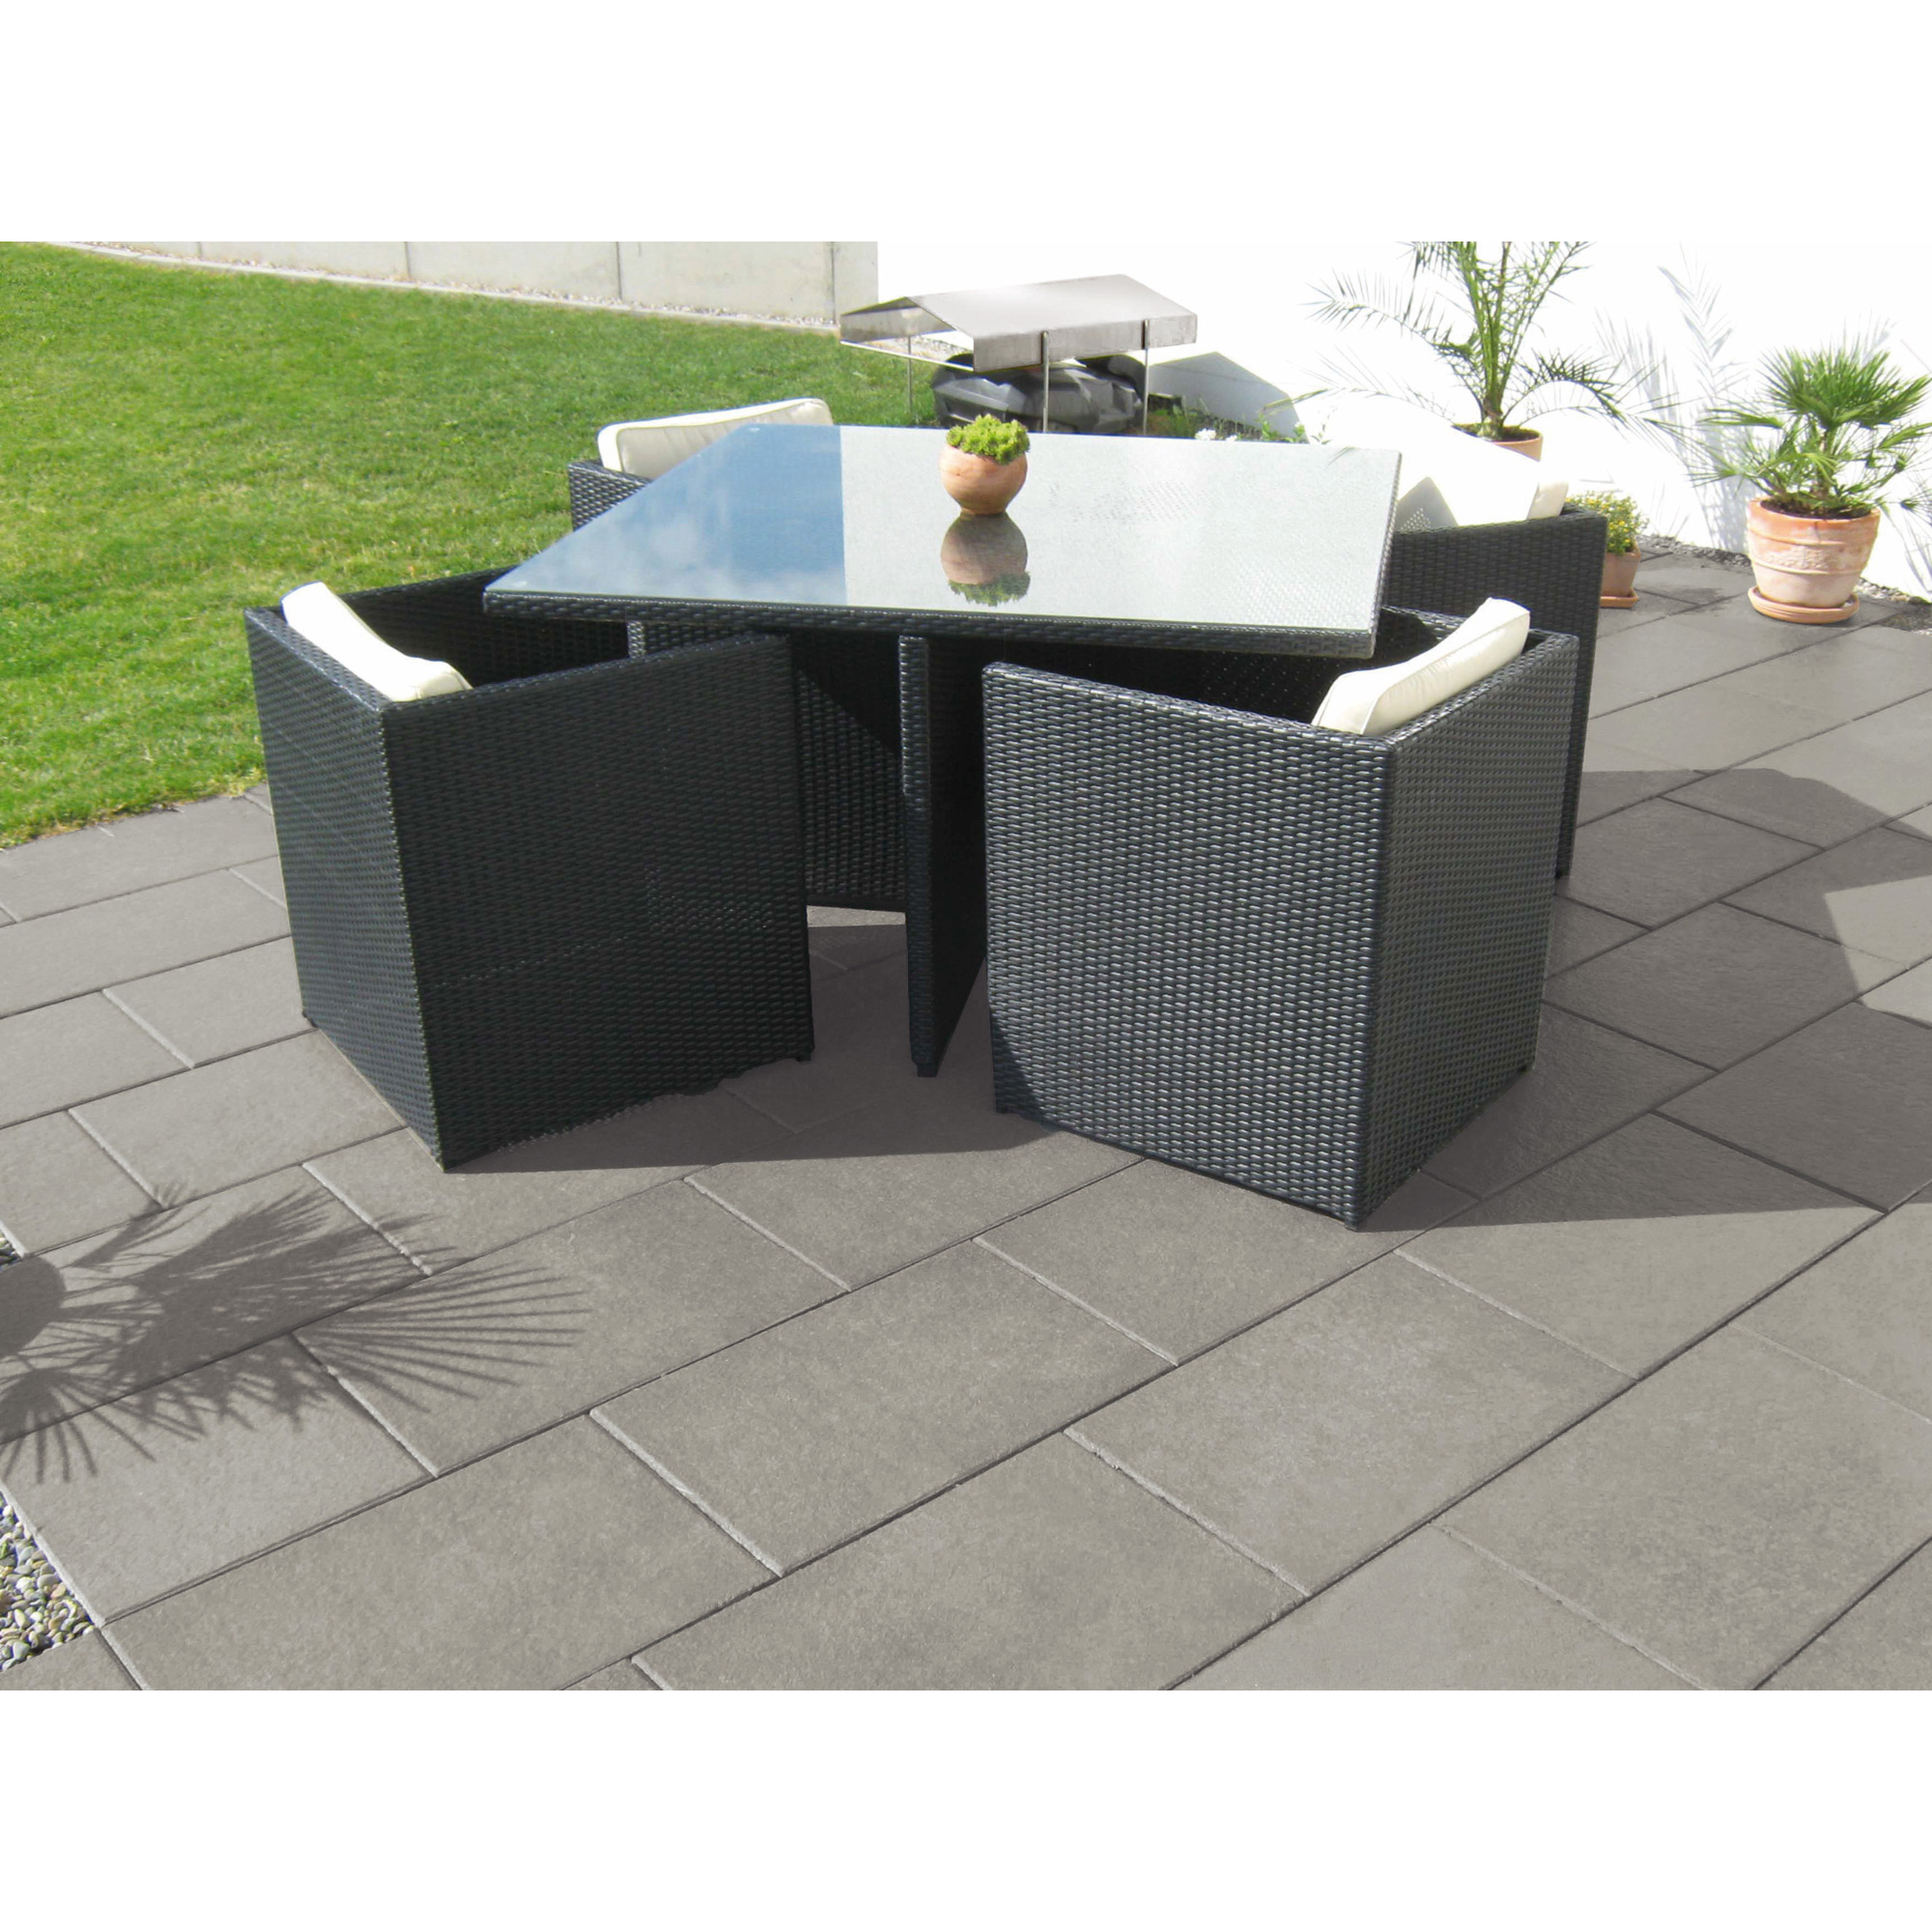 Terrassenplatte 'T-Court Selection' Beton mittelgrau 60 x 40 x 4 cm + product picture